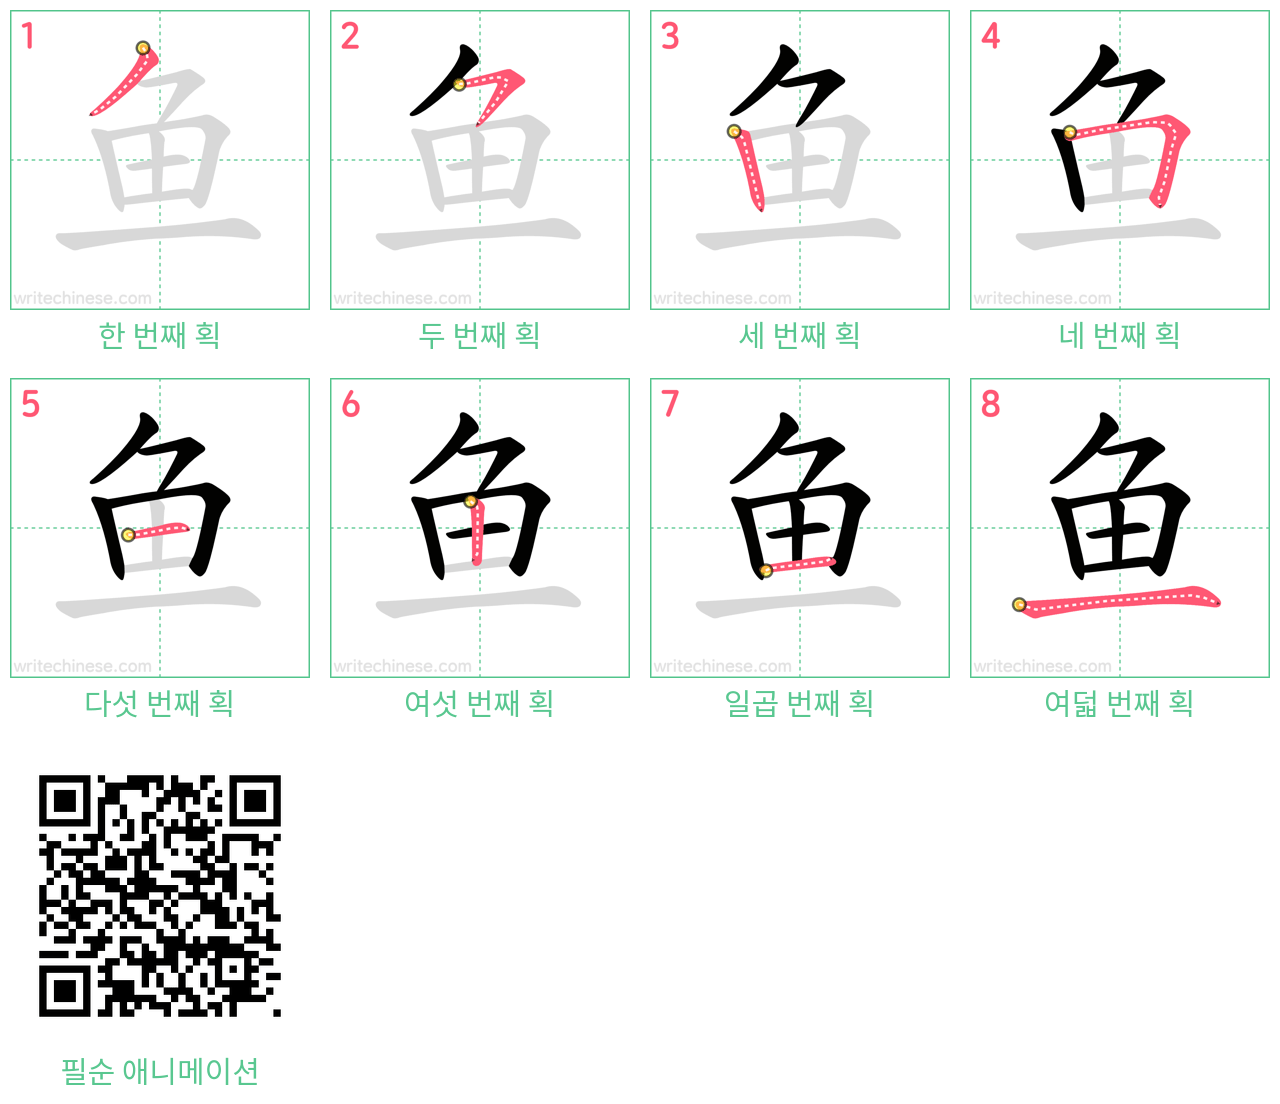 鱼 step-by-step stroke order diagrams